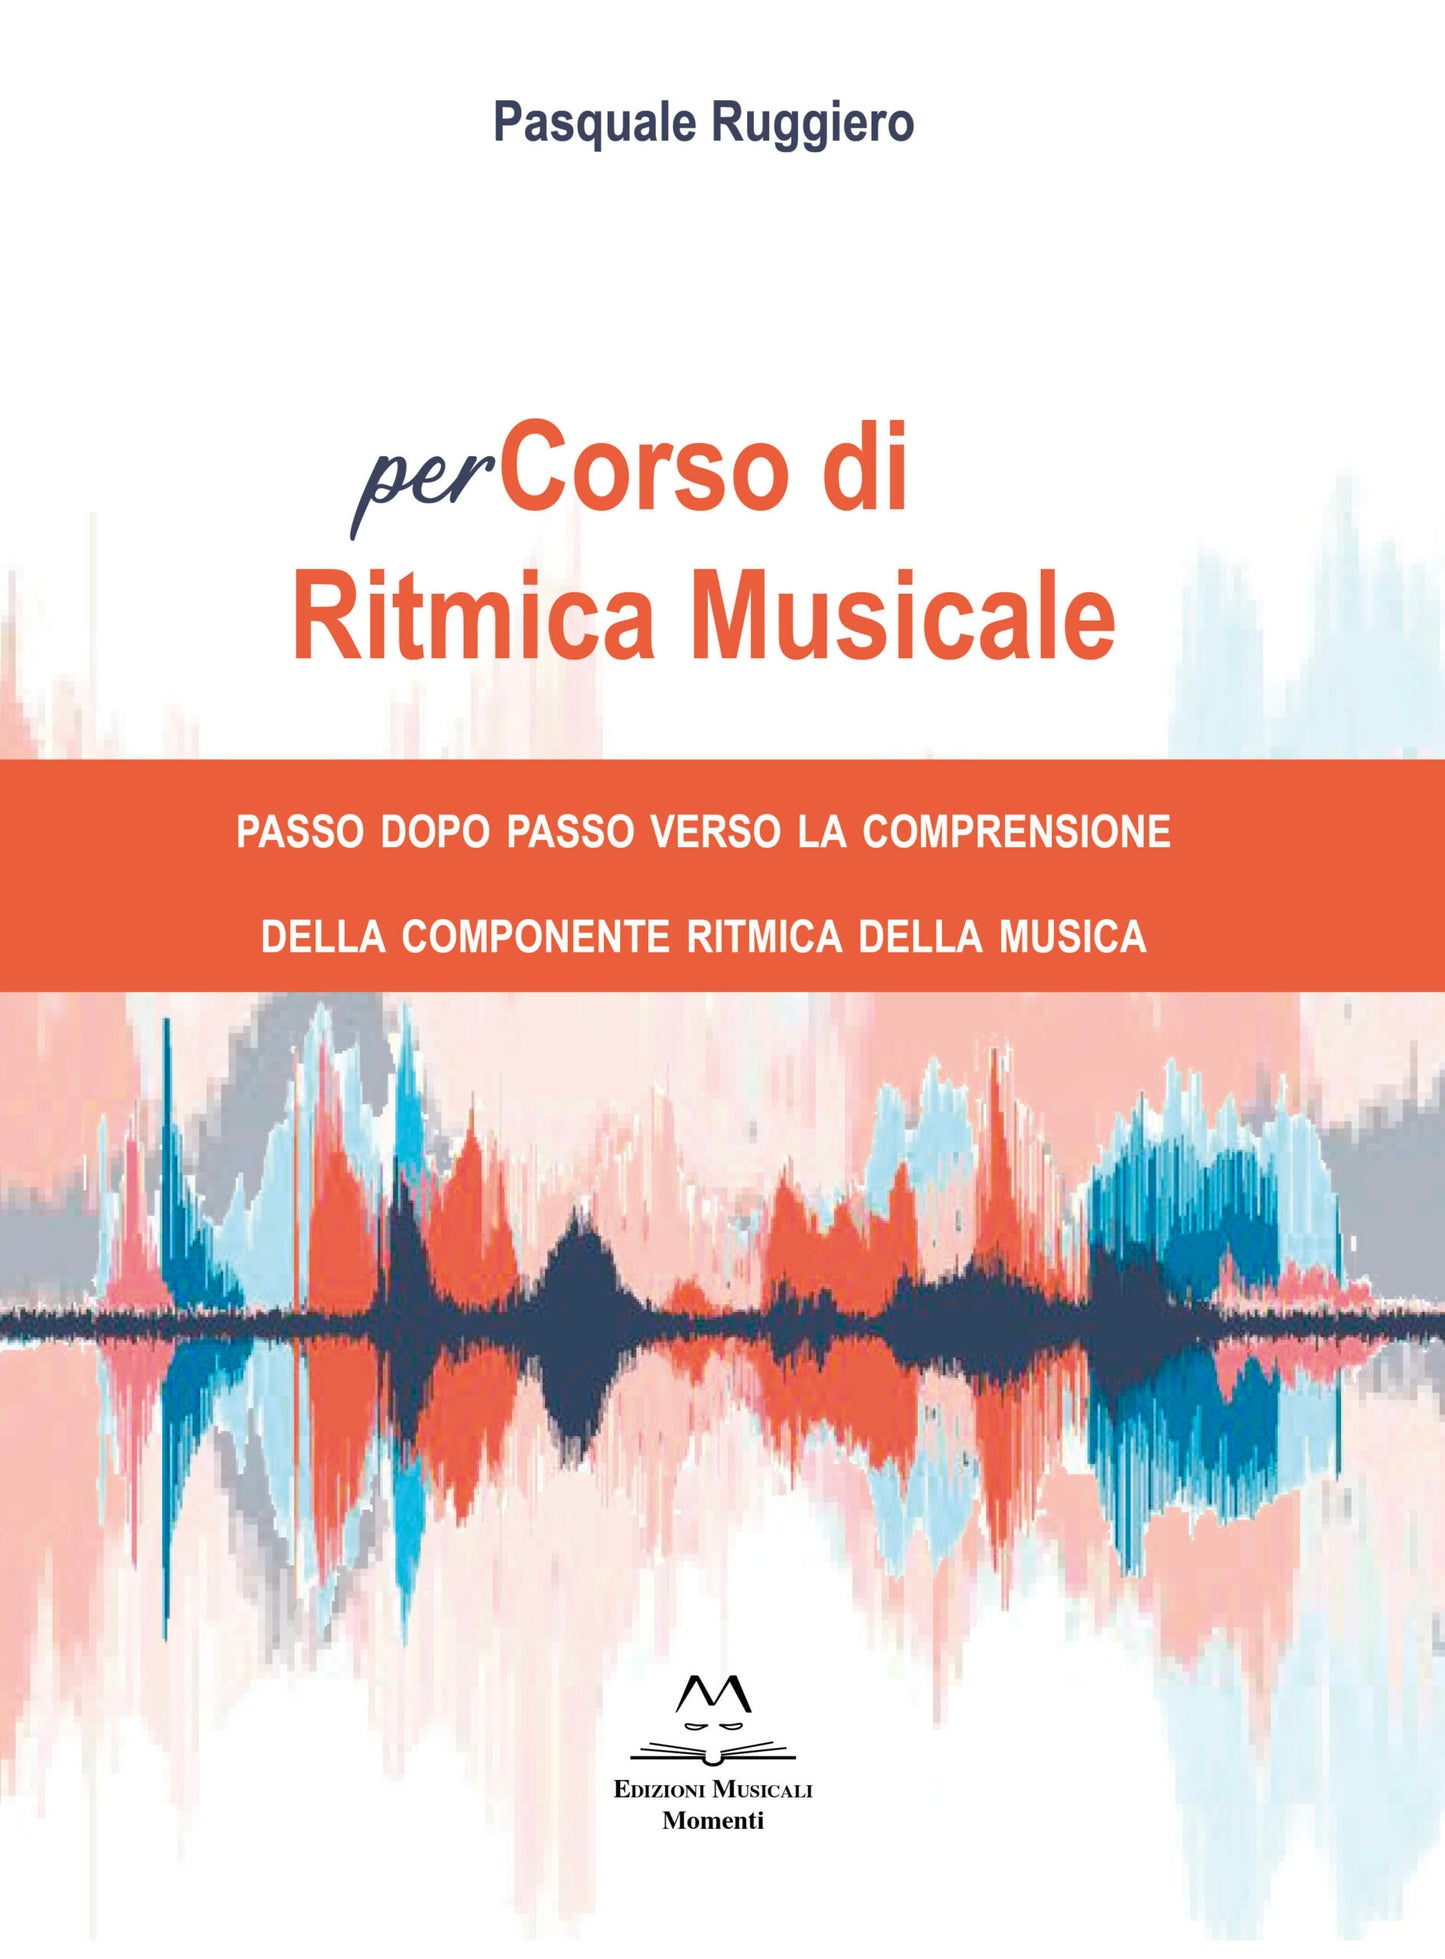 perCorso di Ritmica Musicale di Pasquale Ruggiero